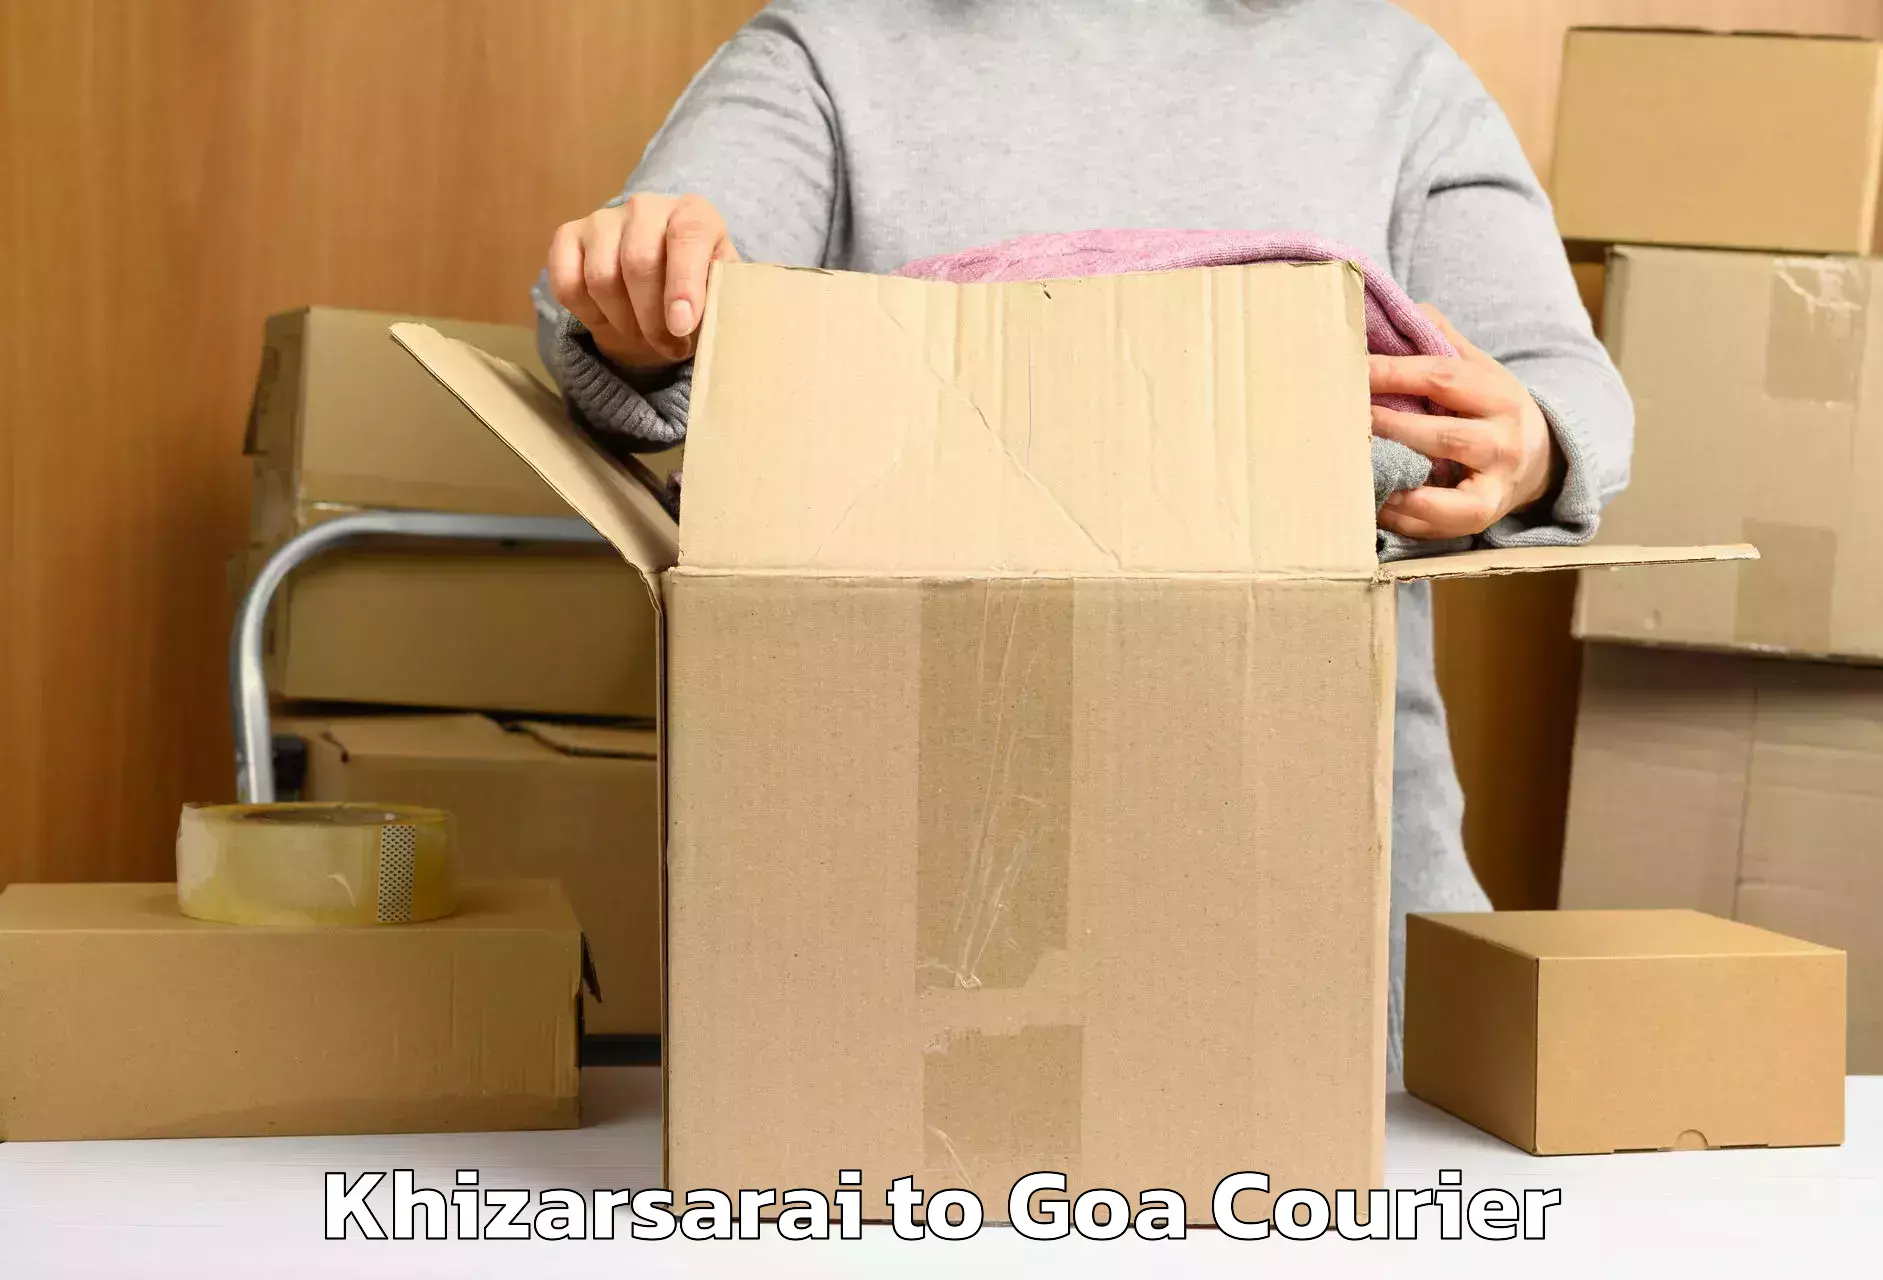 Premium luggage courier Khizarsarai to NIT Goa